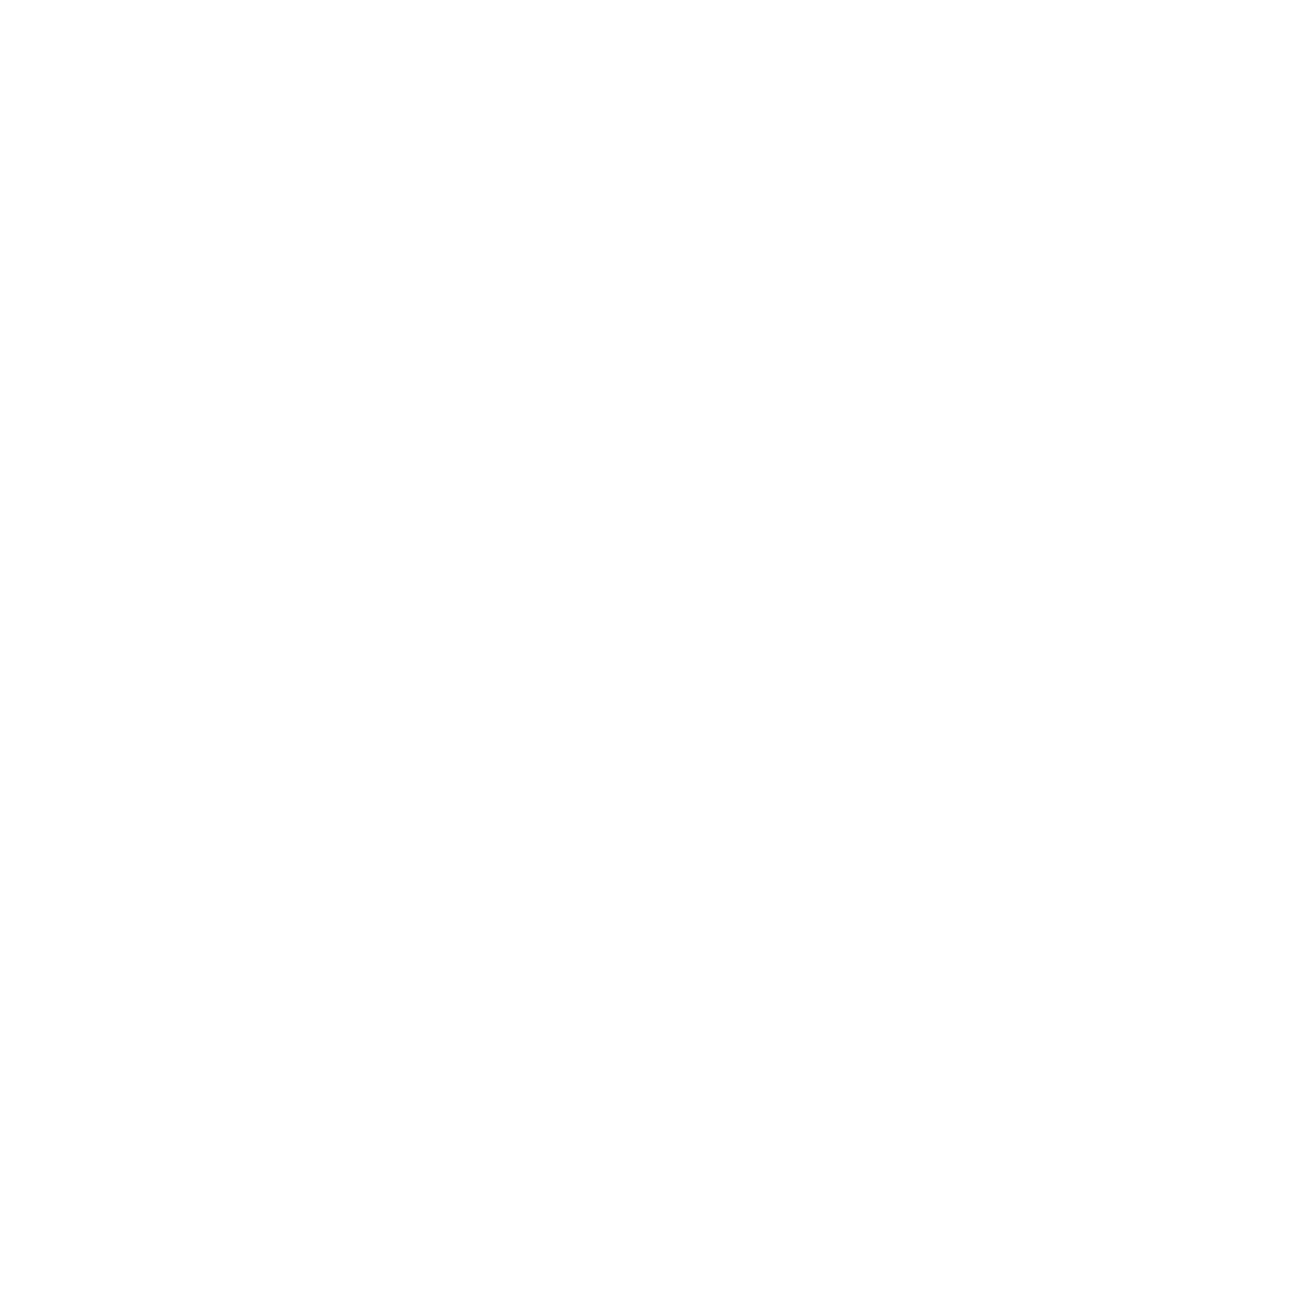 Guajira exótica